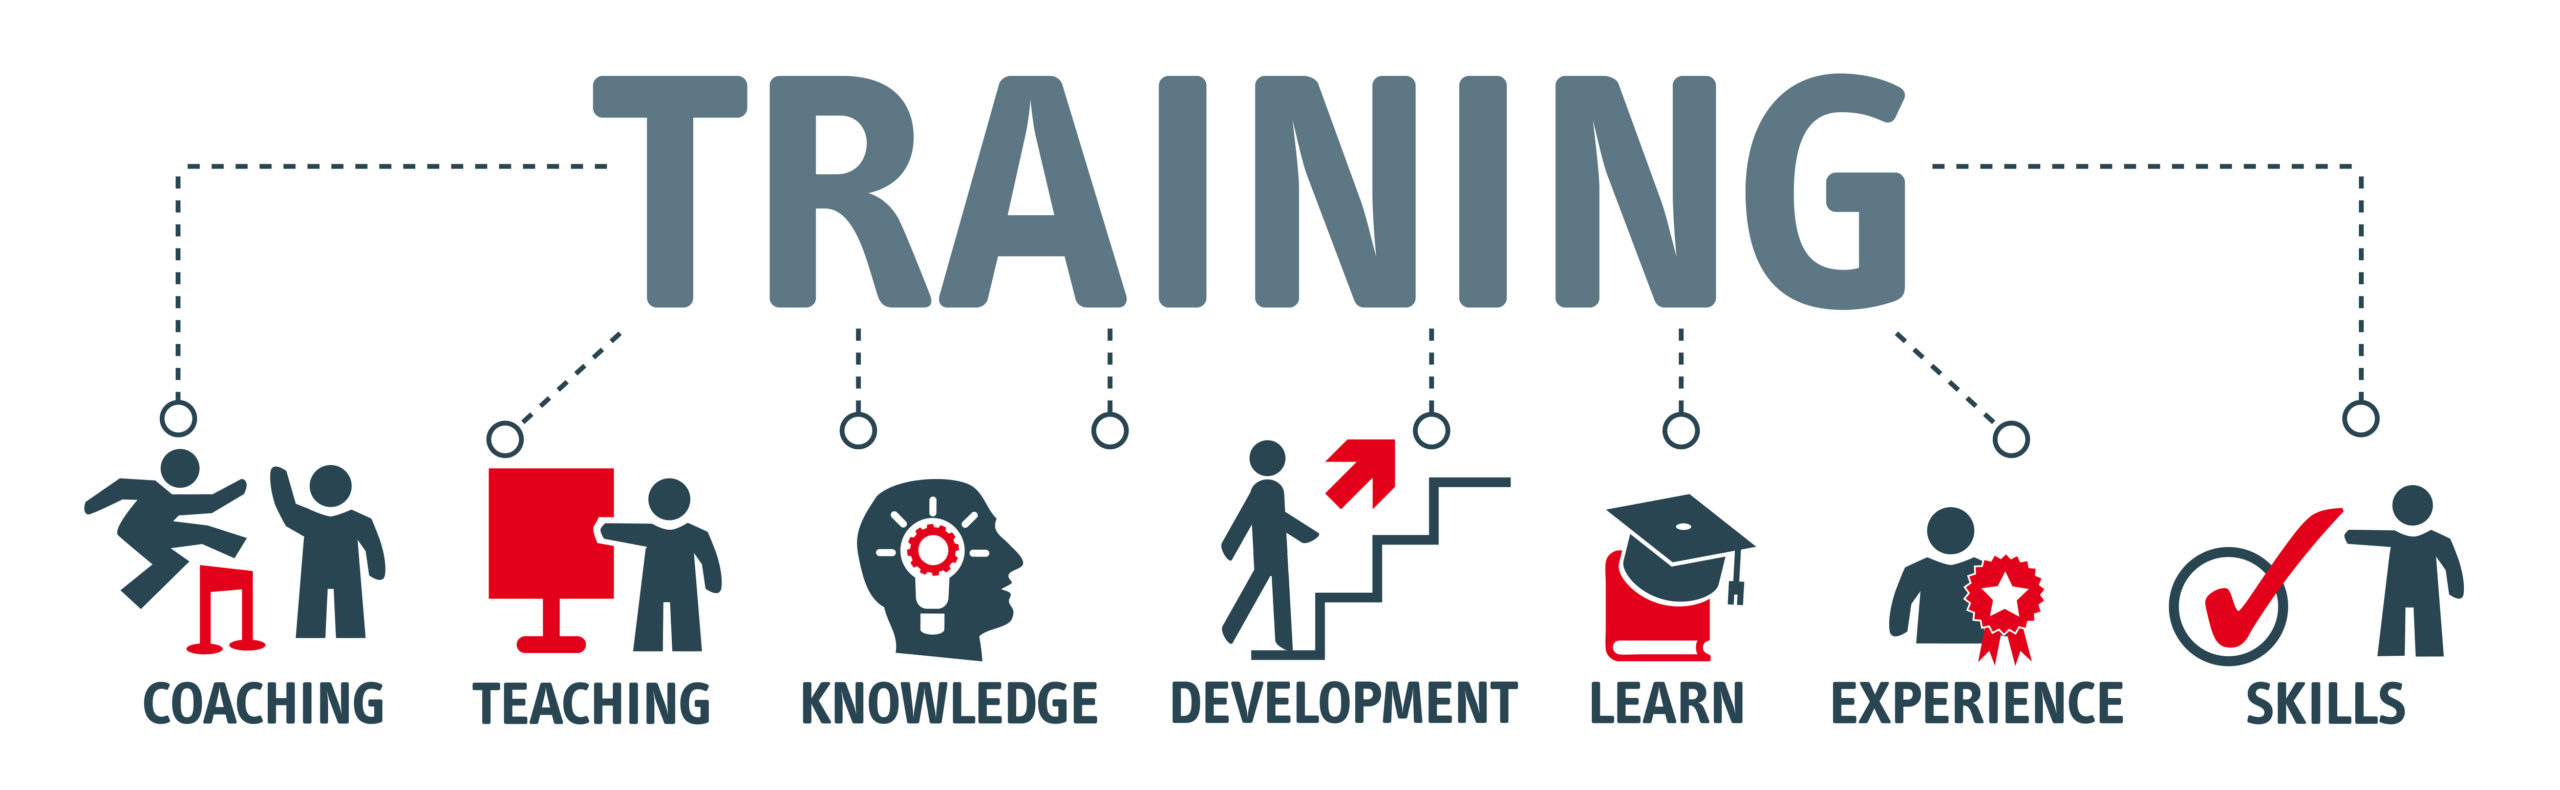 De voordelen van een incompany training bij Incompanybrain. Een goede training levert je coaching, kennis, ontwikkeling, ervaring en vaardigheden.